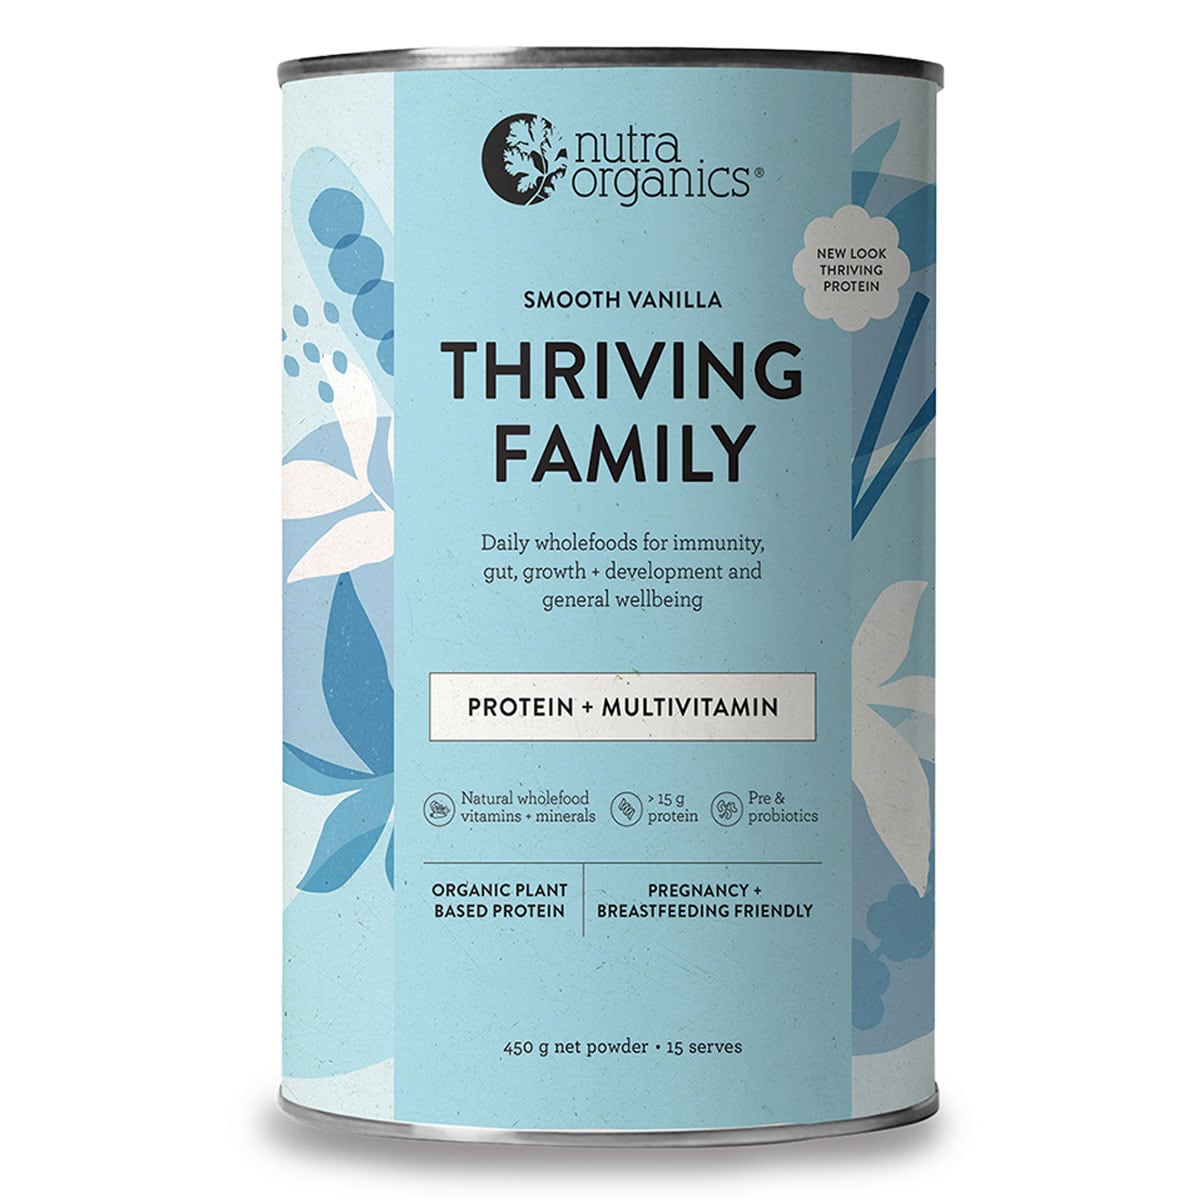 Nutra Organics Thriving Family Smooth Vanilla Protein + Multivitamin 450g